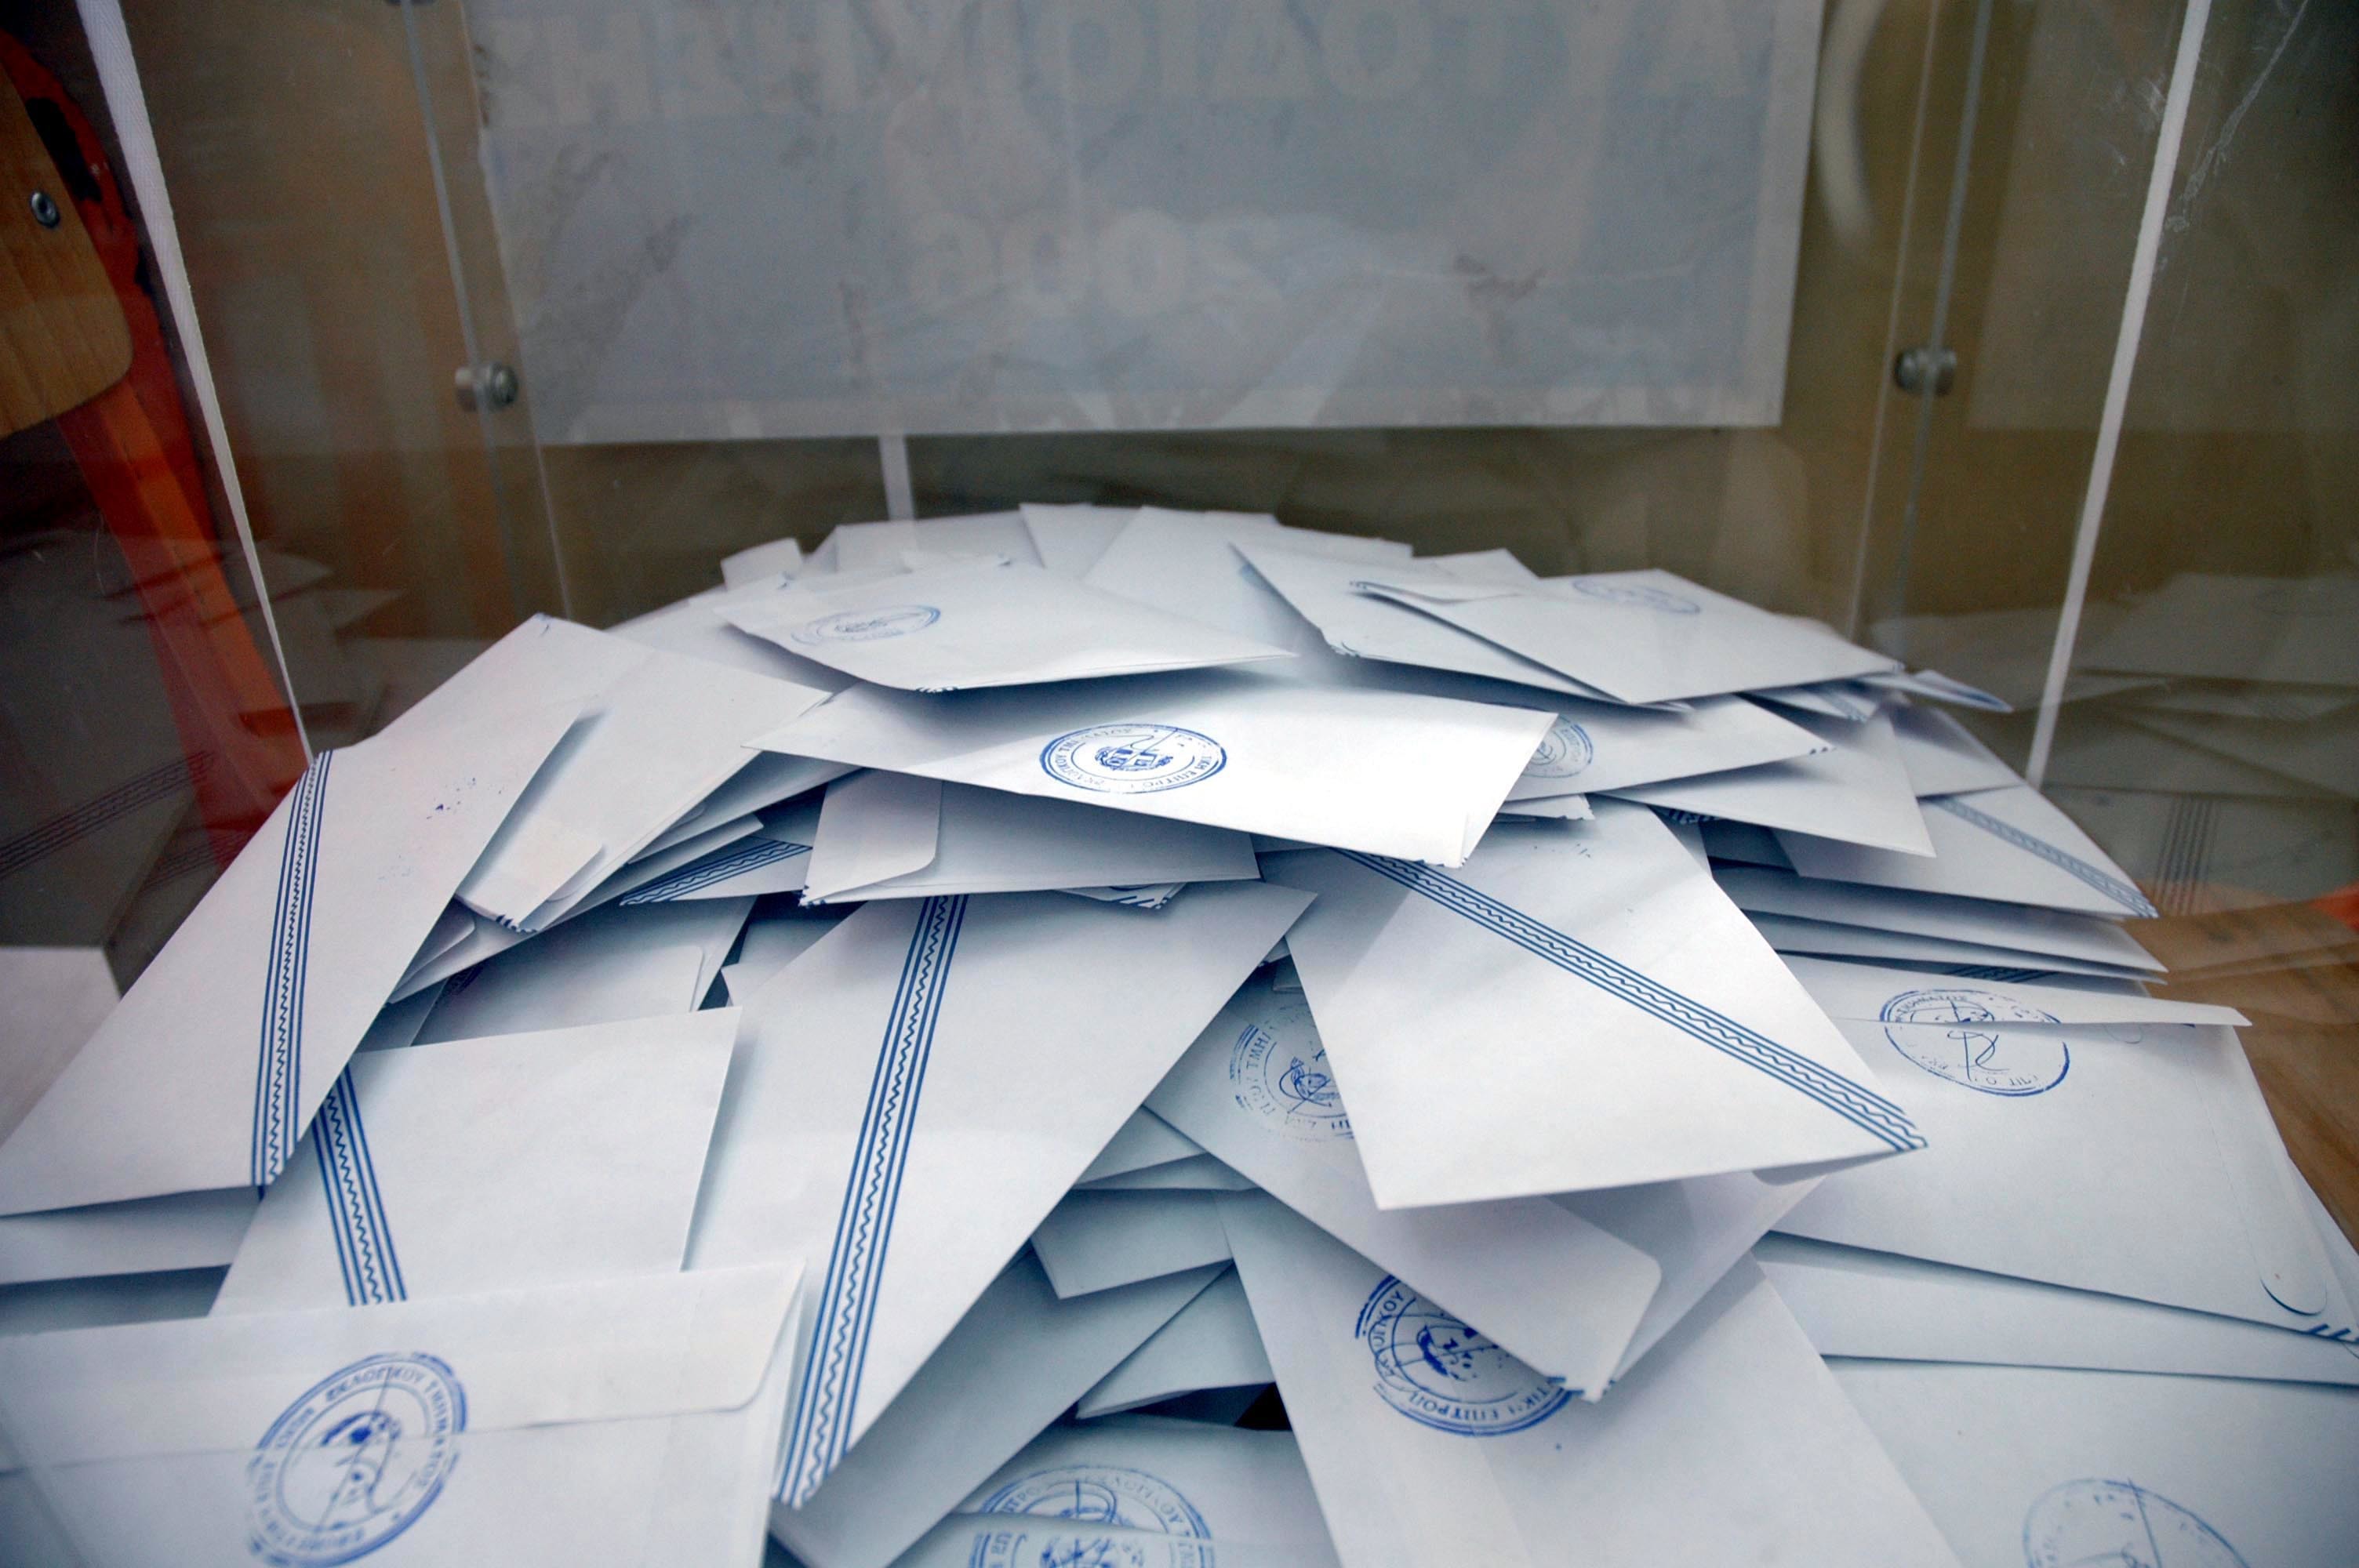 Αυτά είναι τα 46 κόμματα που θέλουν να συμμετάσχουν στις ευρωεκλογές – Και ένας μεμονωμένος υποψήφιος